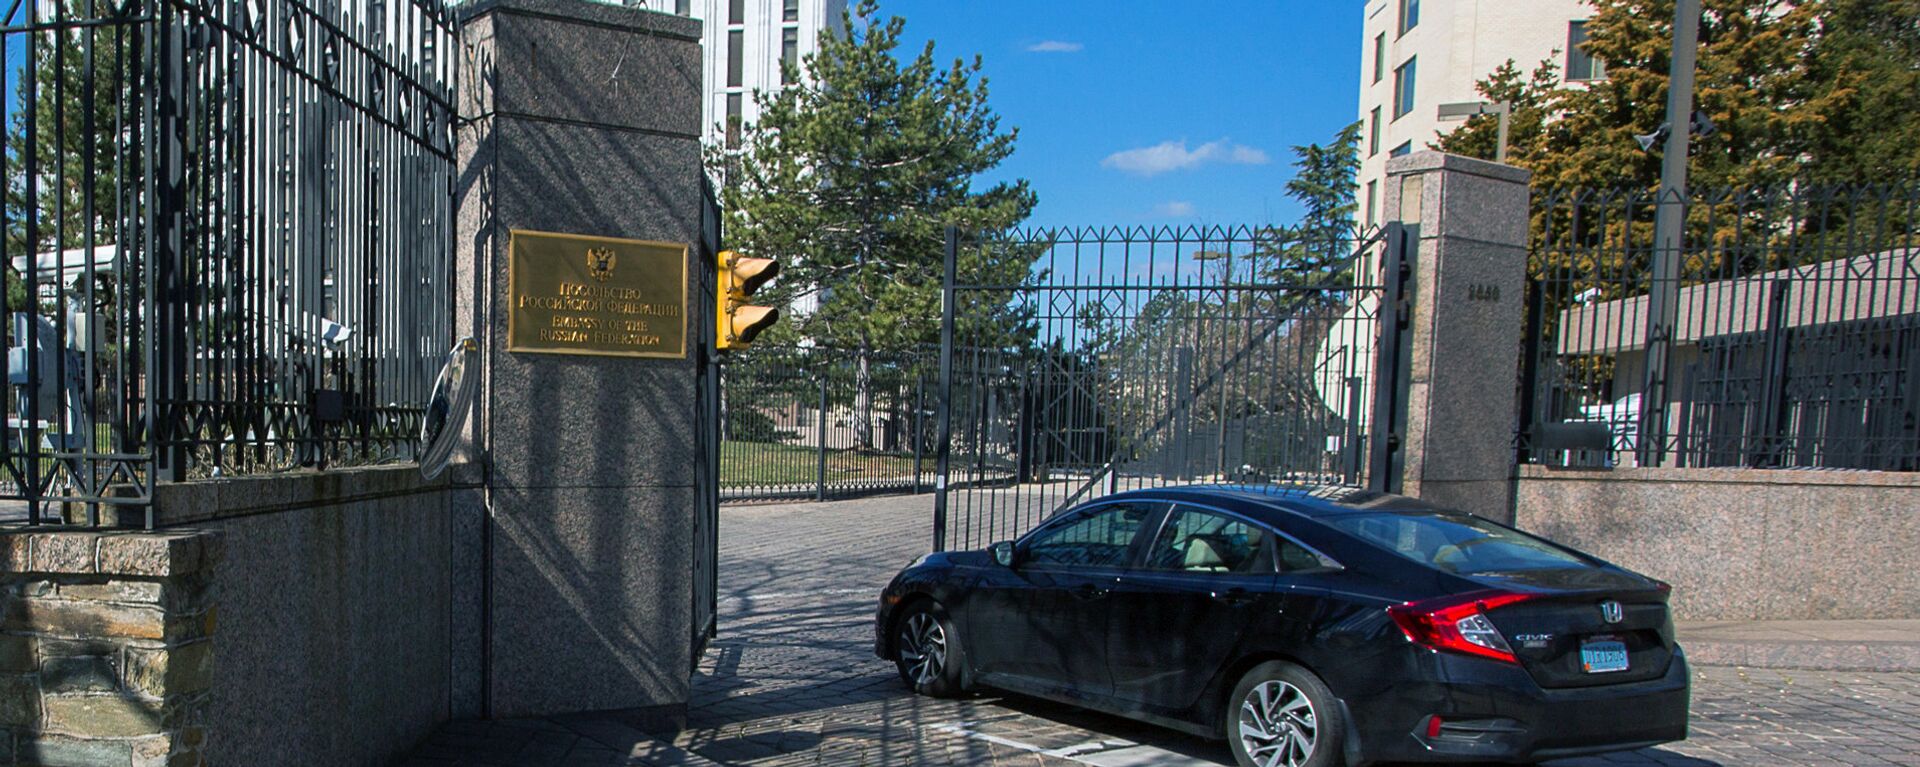 Амбасада Русије у САД - Sputnik Србија, 1920, 02.08.2021